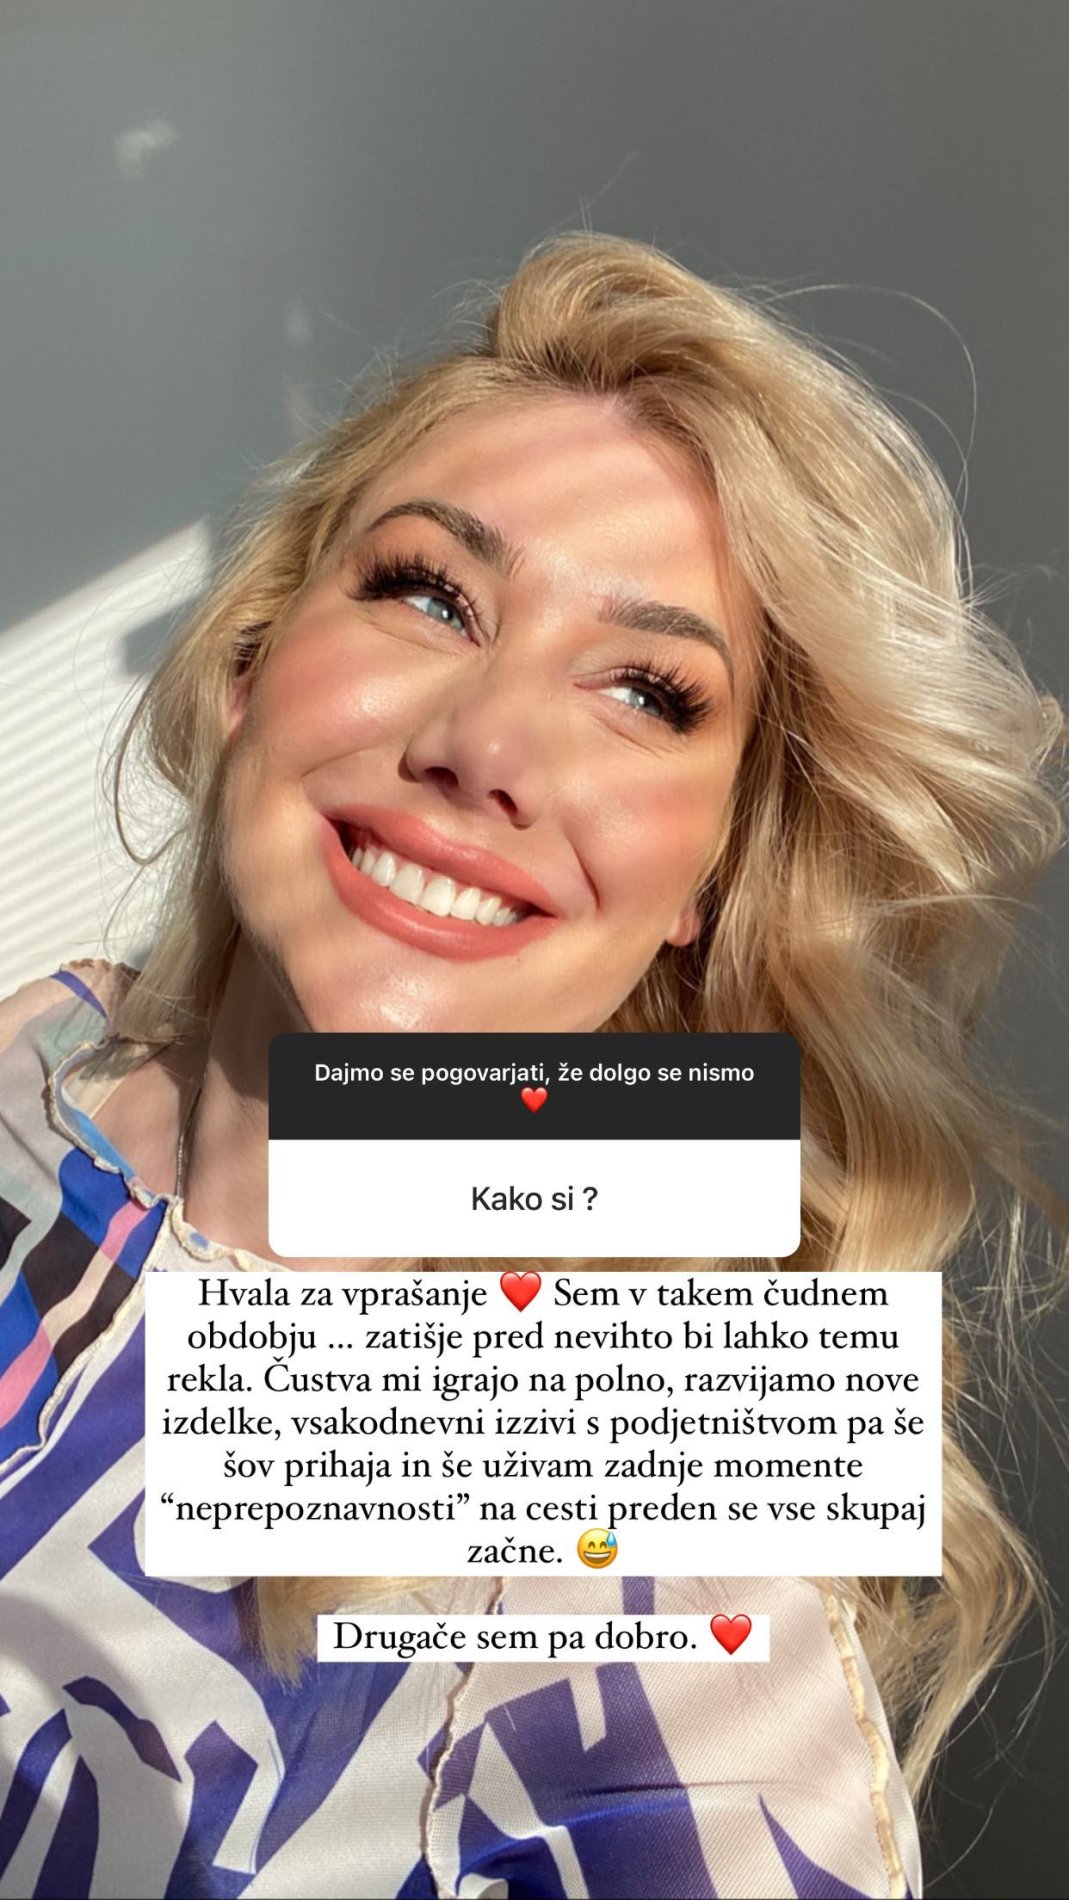 Indira Ekić preživlja turbolentne čase. Vir: Instagram